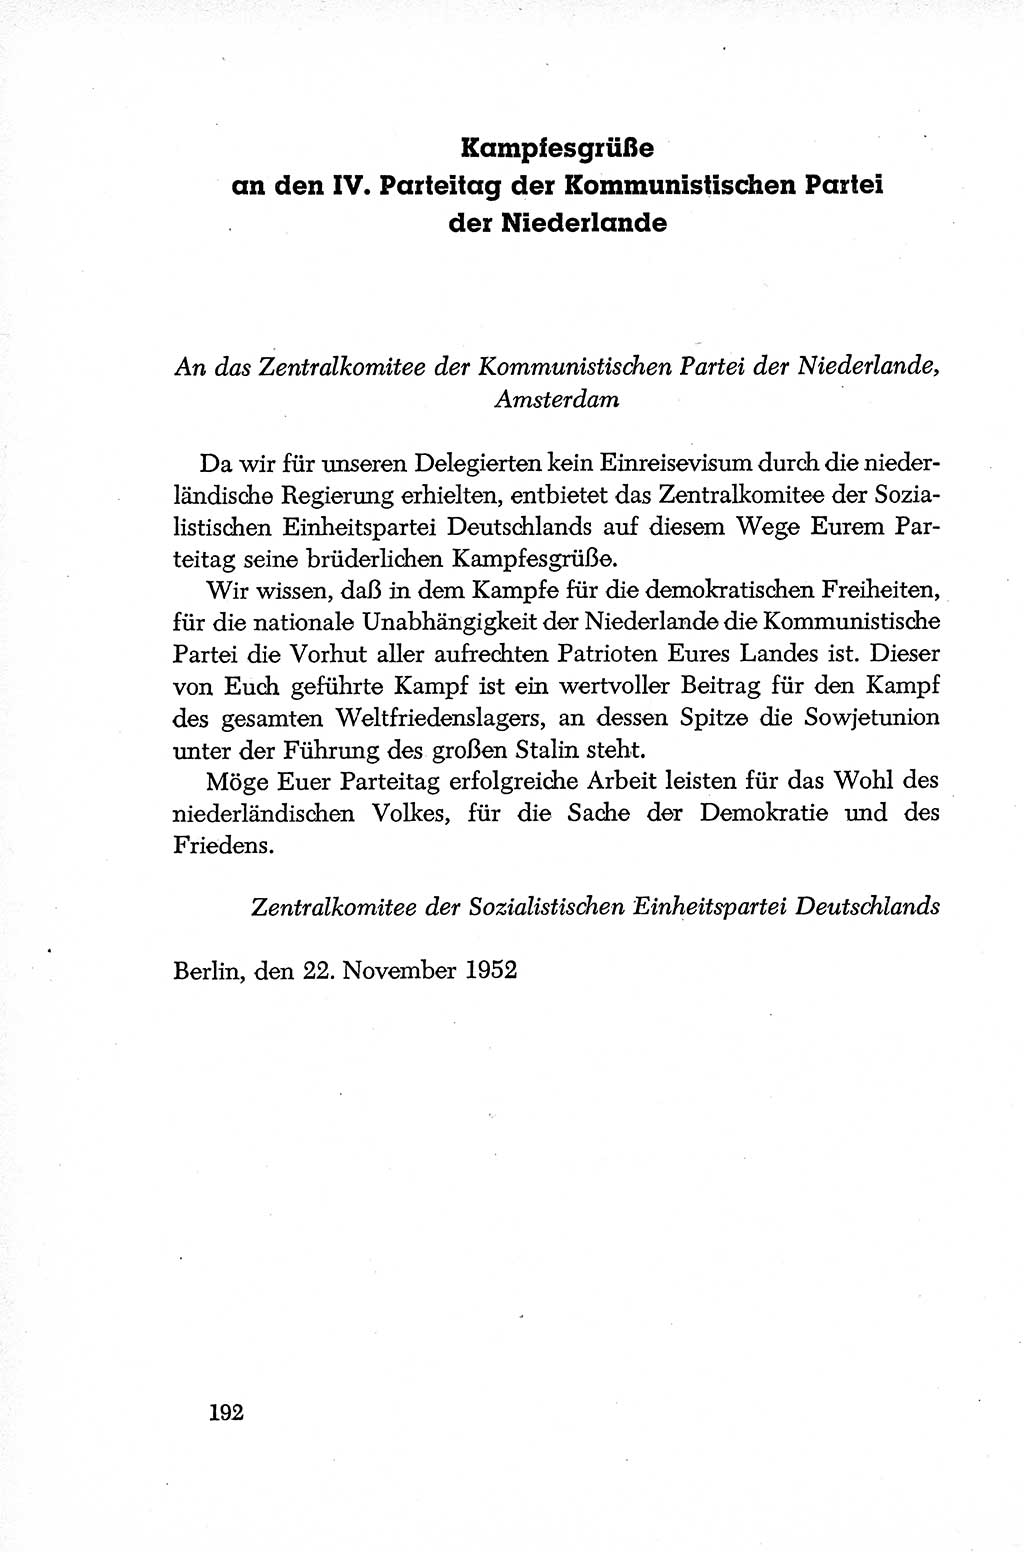 Dokumente der Sozialistischen Einheitspartei Deutschlands (SED) [Deutsche Demokratische Republik (DDR)] 1952-1953, Seite 192 (Dok. SED DDR 1952-1953, S. 192)